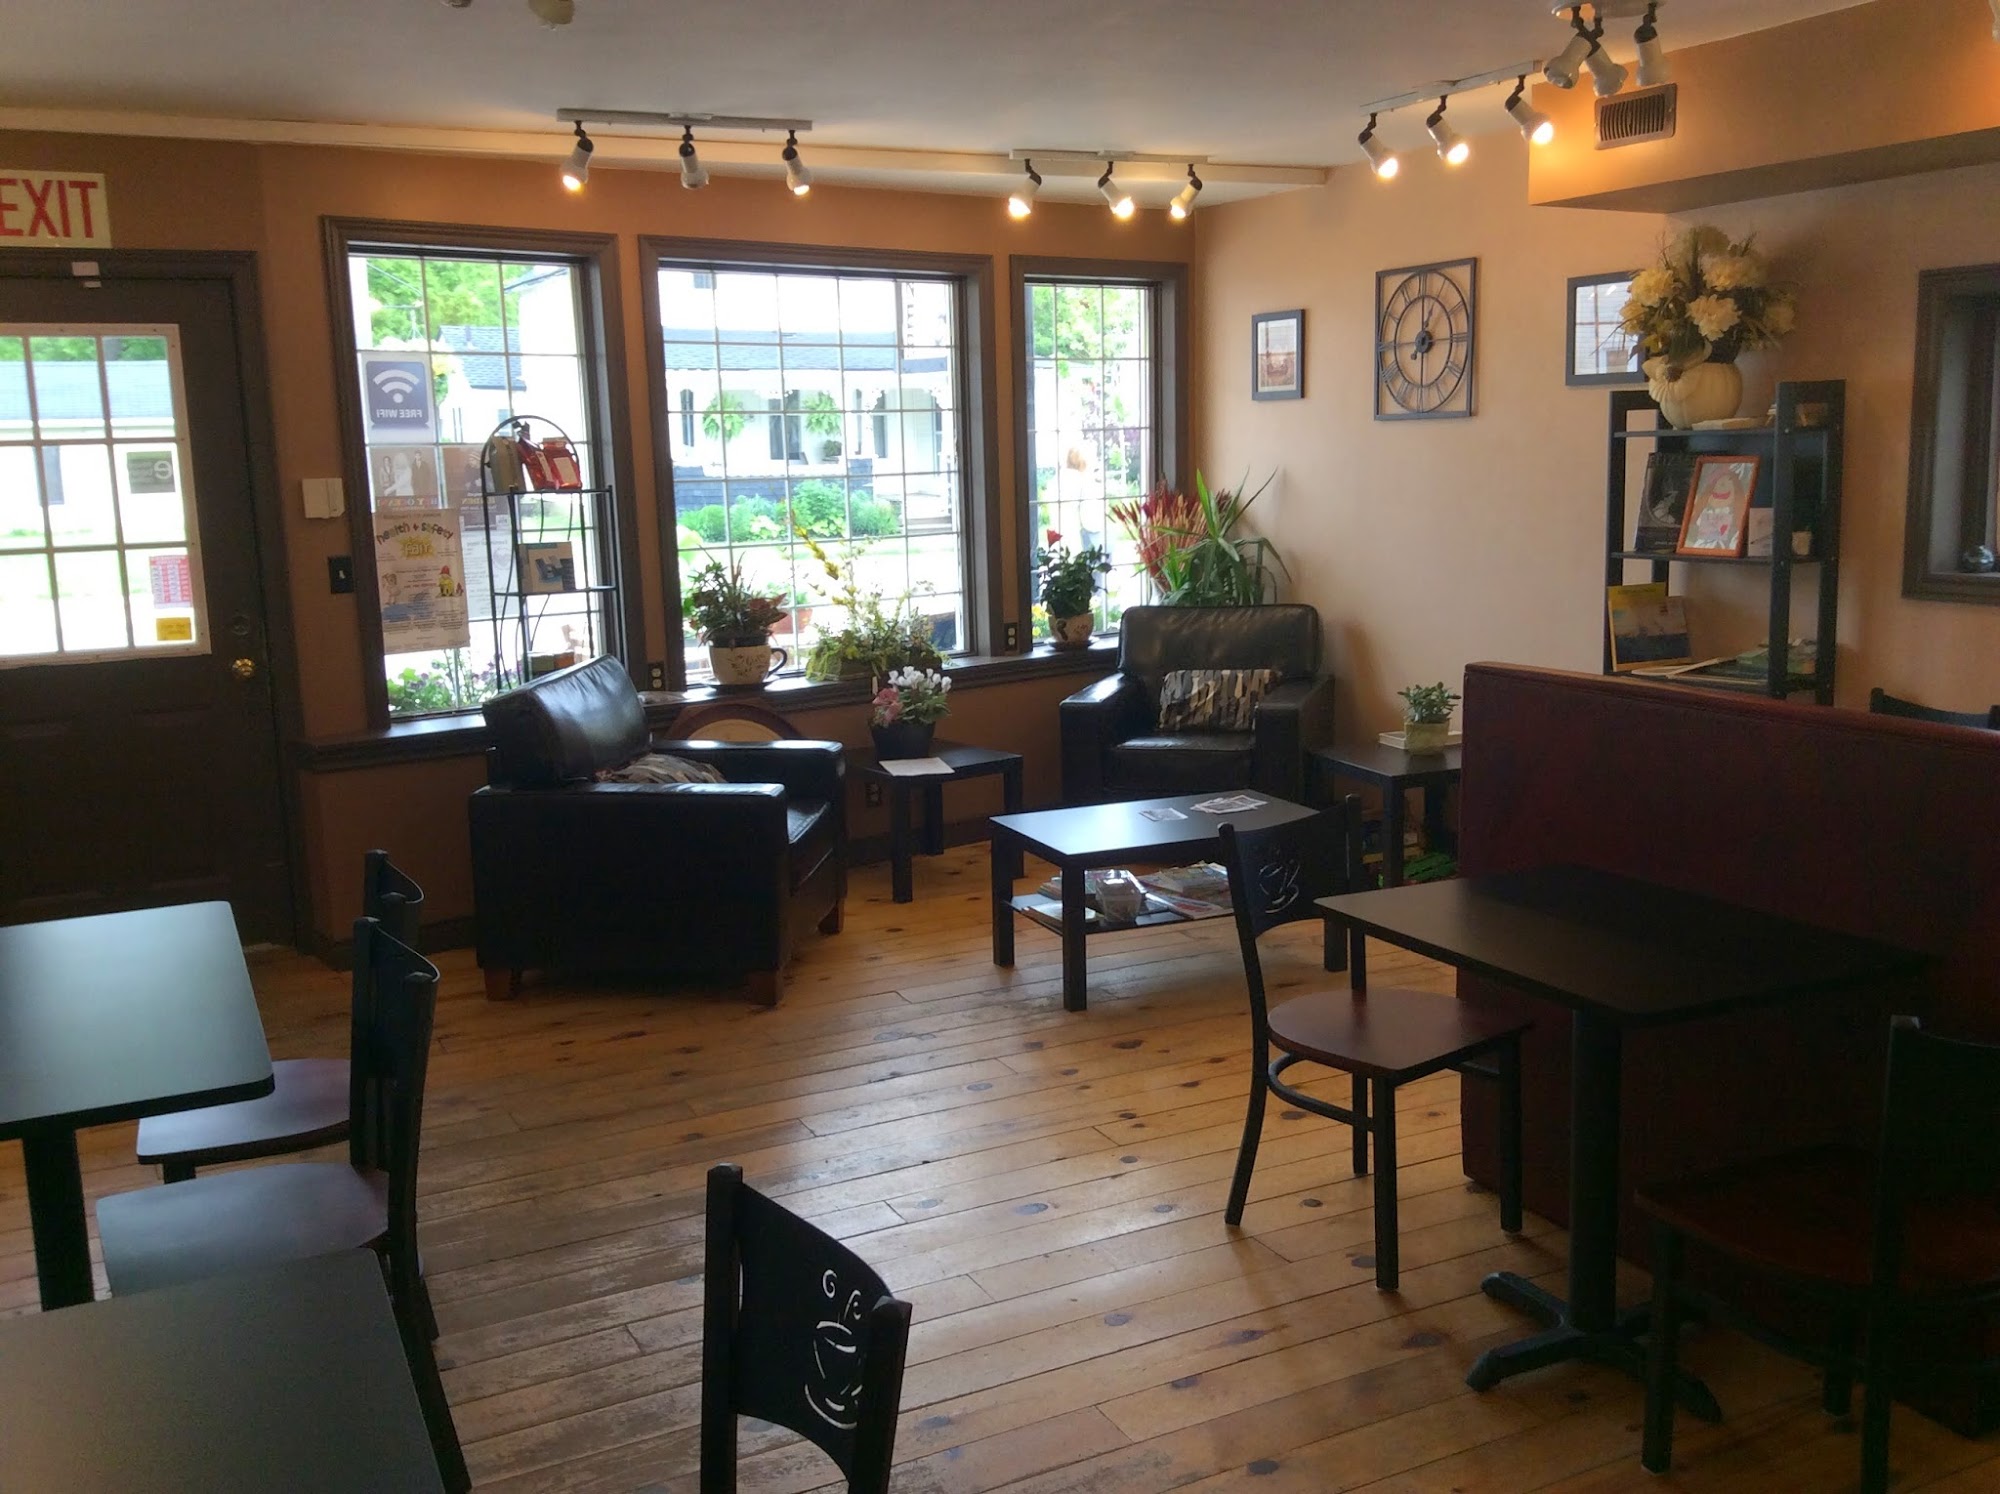 Our Corner Cafe